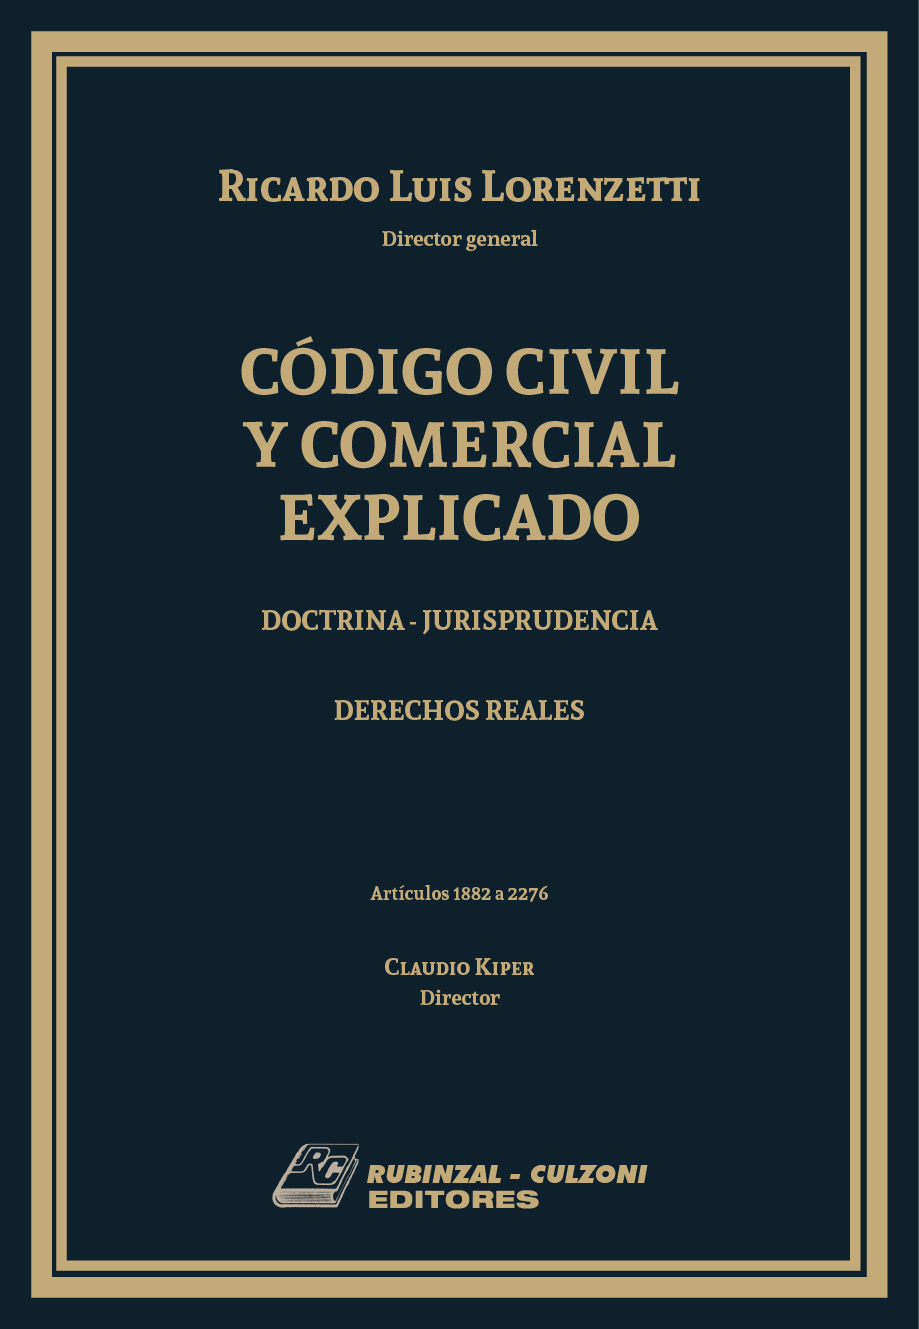 Código Civil y Comercial Explicado. Doctrina - Jurisprudencia -  Libro IV: Derechos Reales (Arts. 1882 - 2276) - (N° Páginas 714)